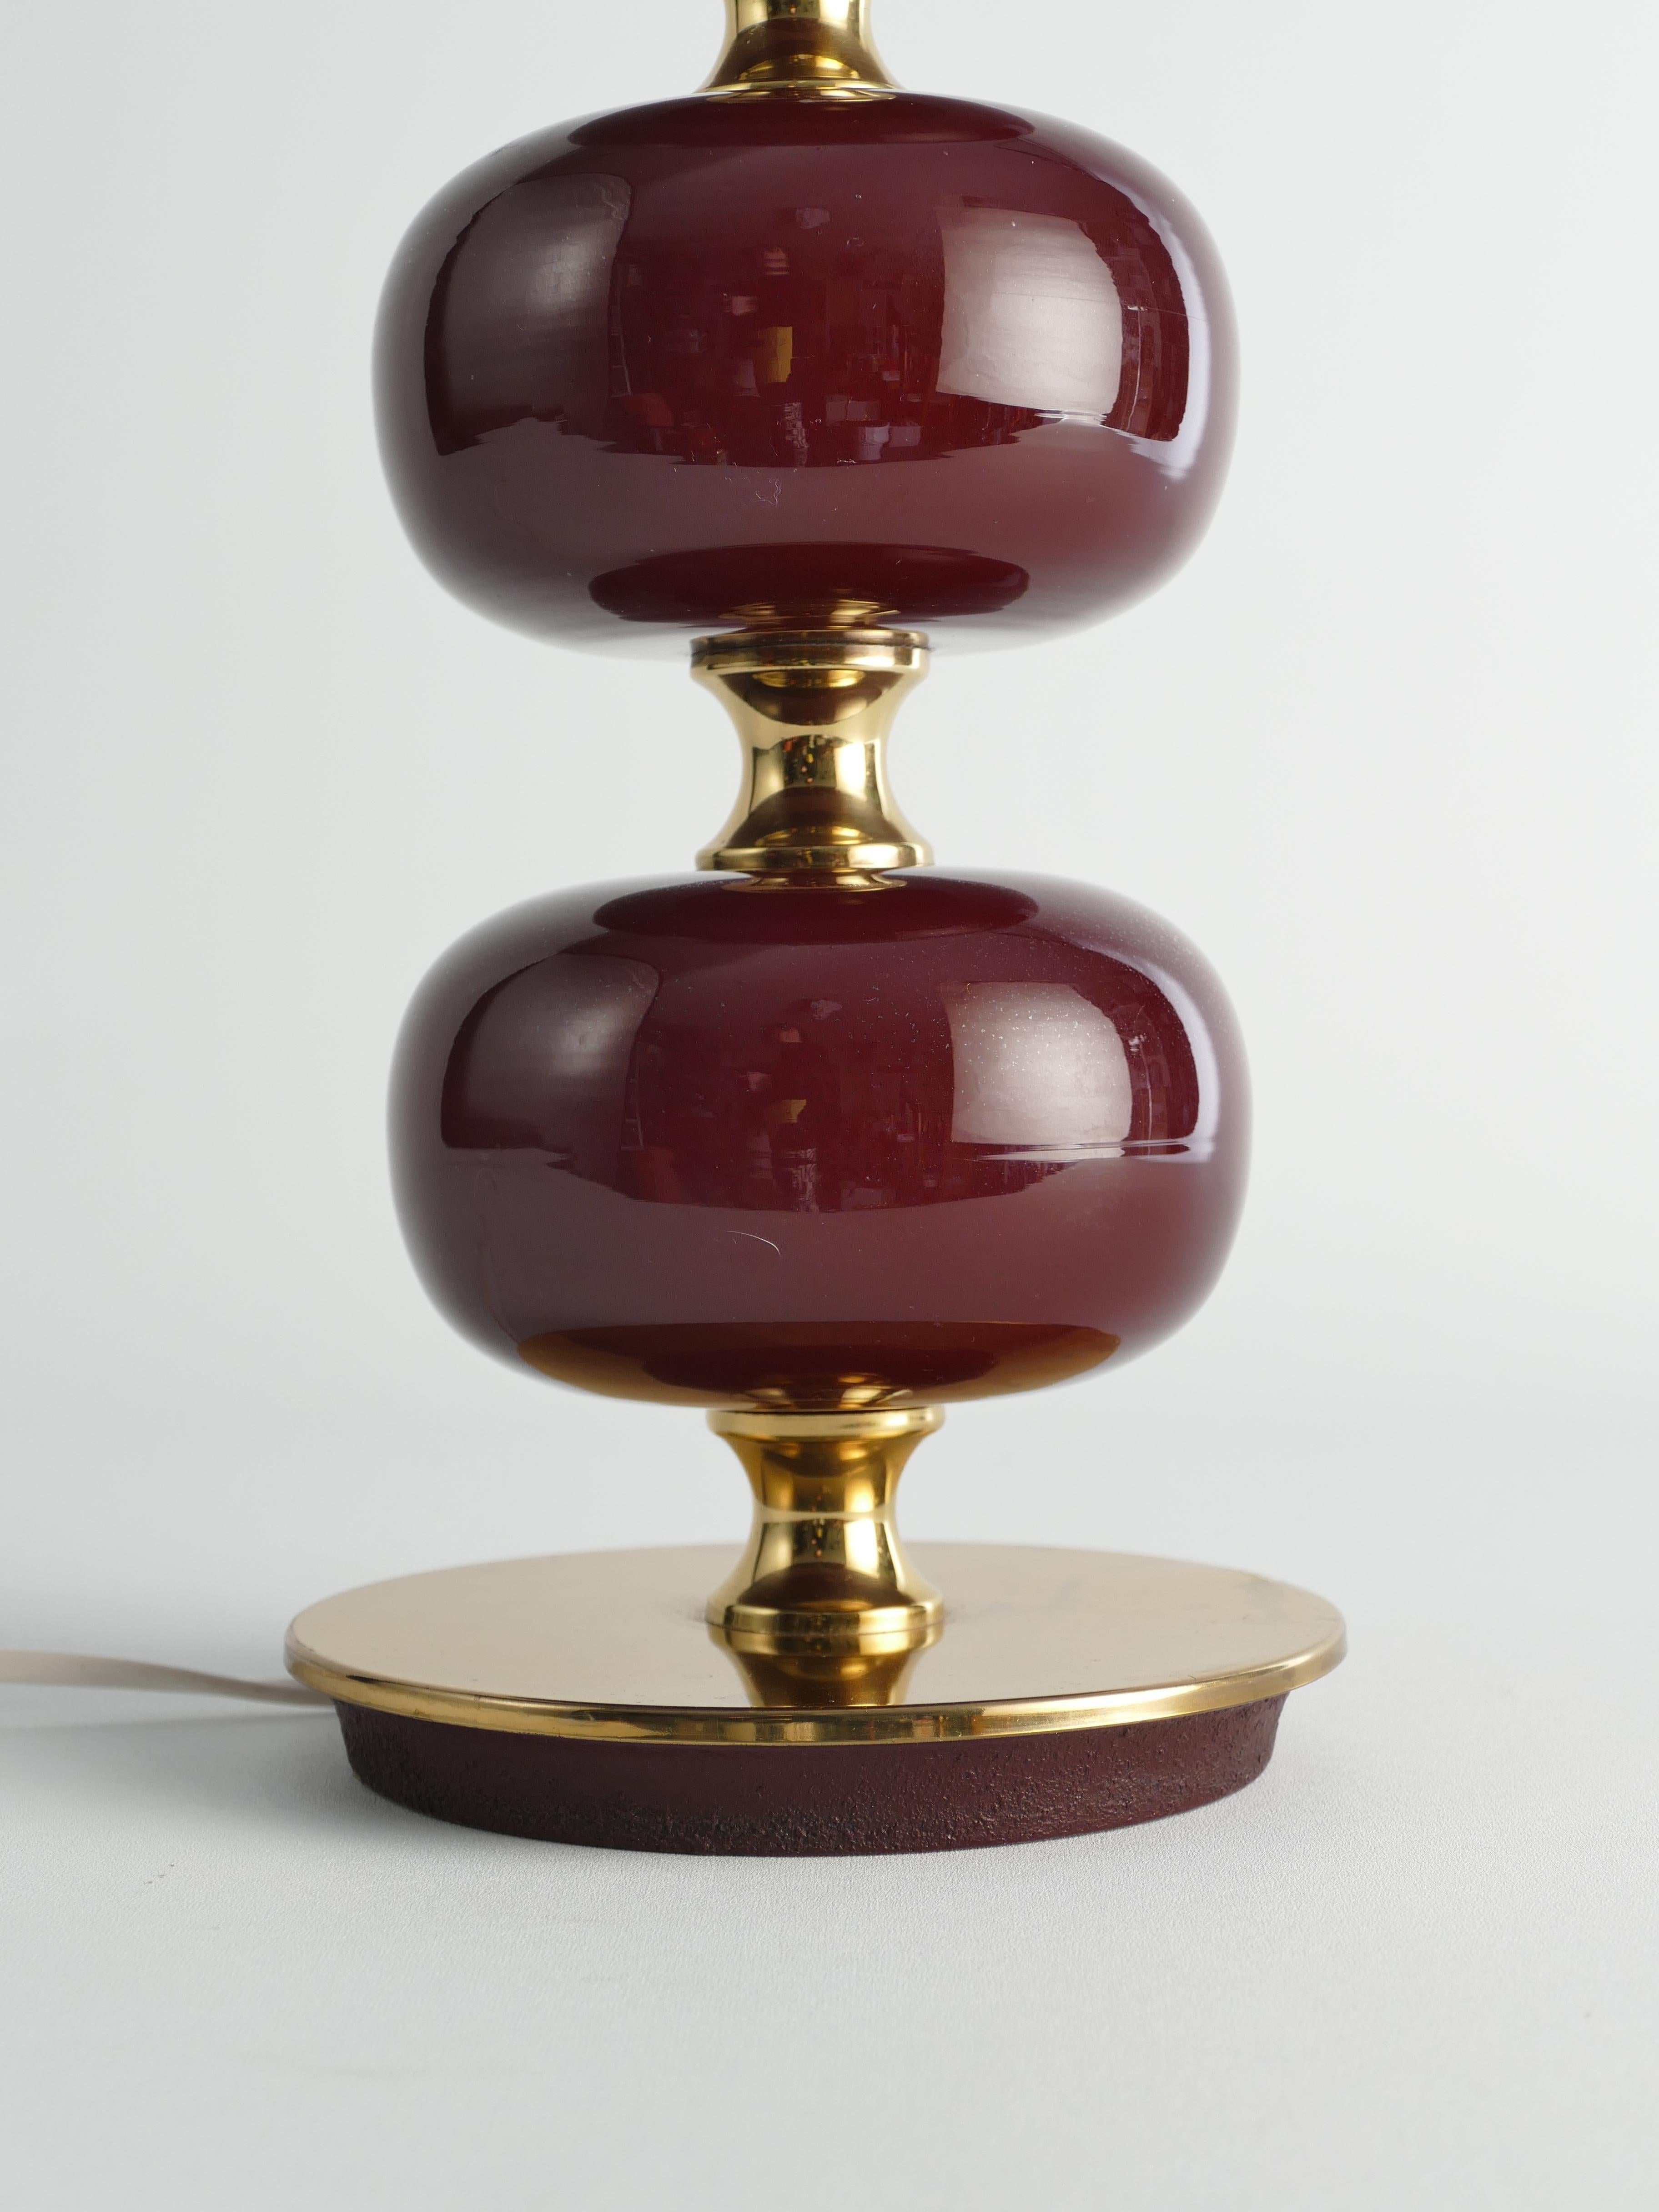 Cette lampe de table du milieu du siècle, fabriquée par Stilarmatur Tranås en Suède entre les années 1960 et 1970, présente trois sphères en verre rouge bordeaux avec des pieds et des détails en laiton.

Conçu par Henrik Blomqvist pour Tranås